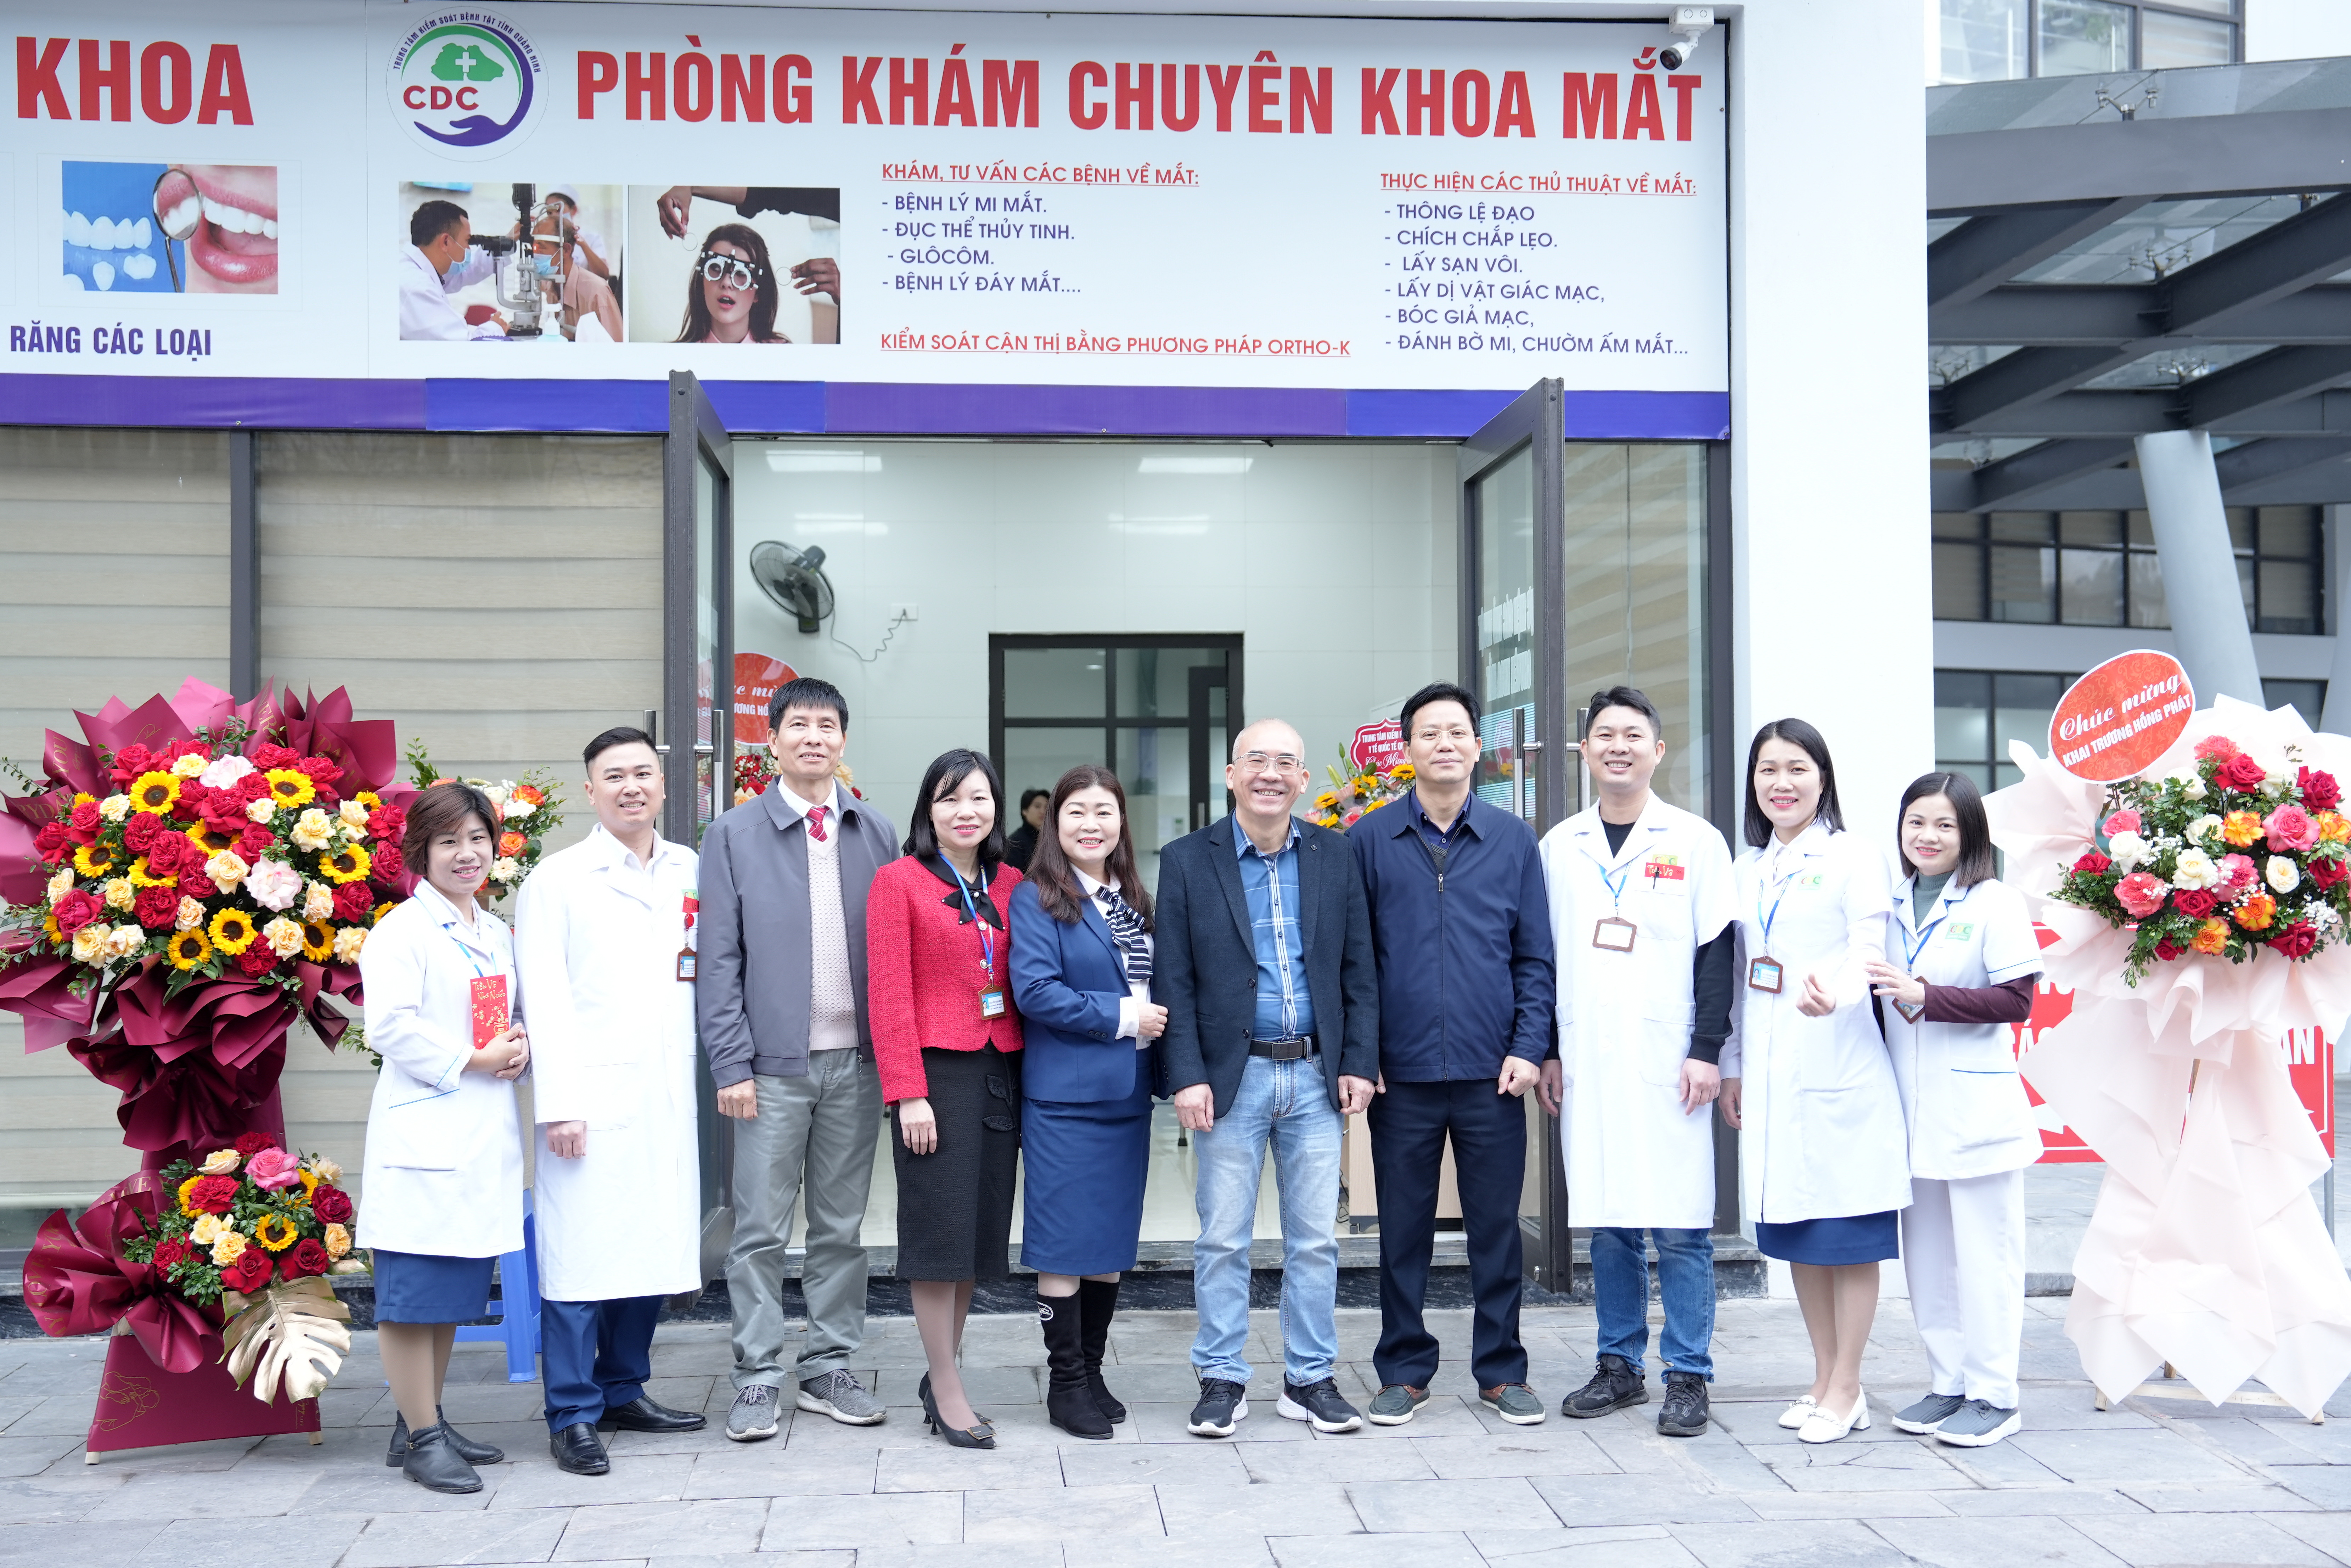 CDC Quảng Ninh: Khai trương Phòng khám dịch vụ Mắt – Da liễu